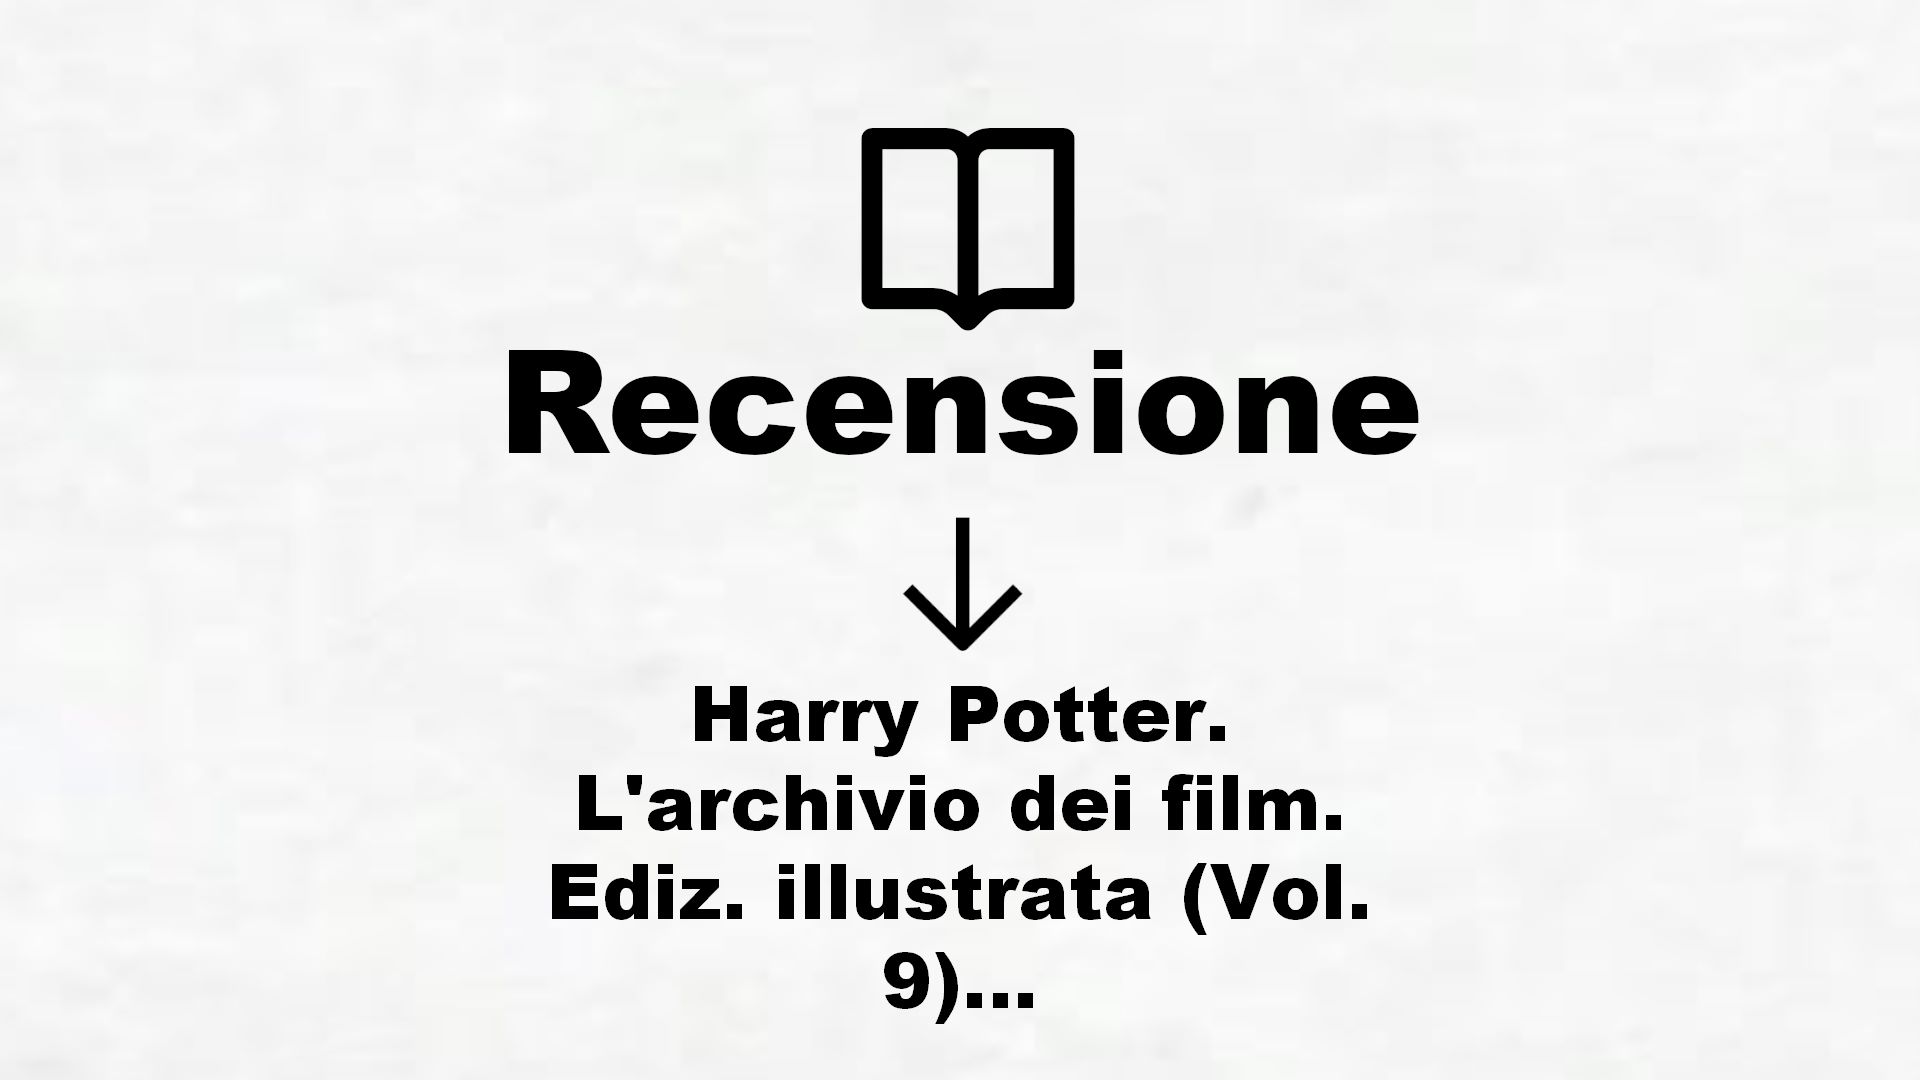 Harry Potter. L’archivio dei film. Ediz. illustrata (Vol. 9) – Recensione Libro